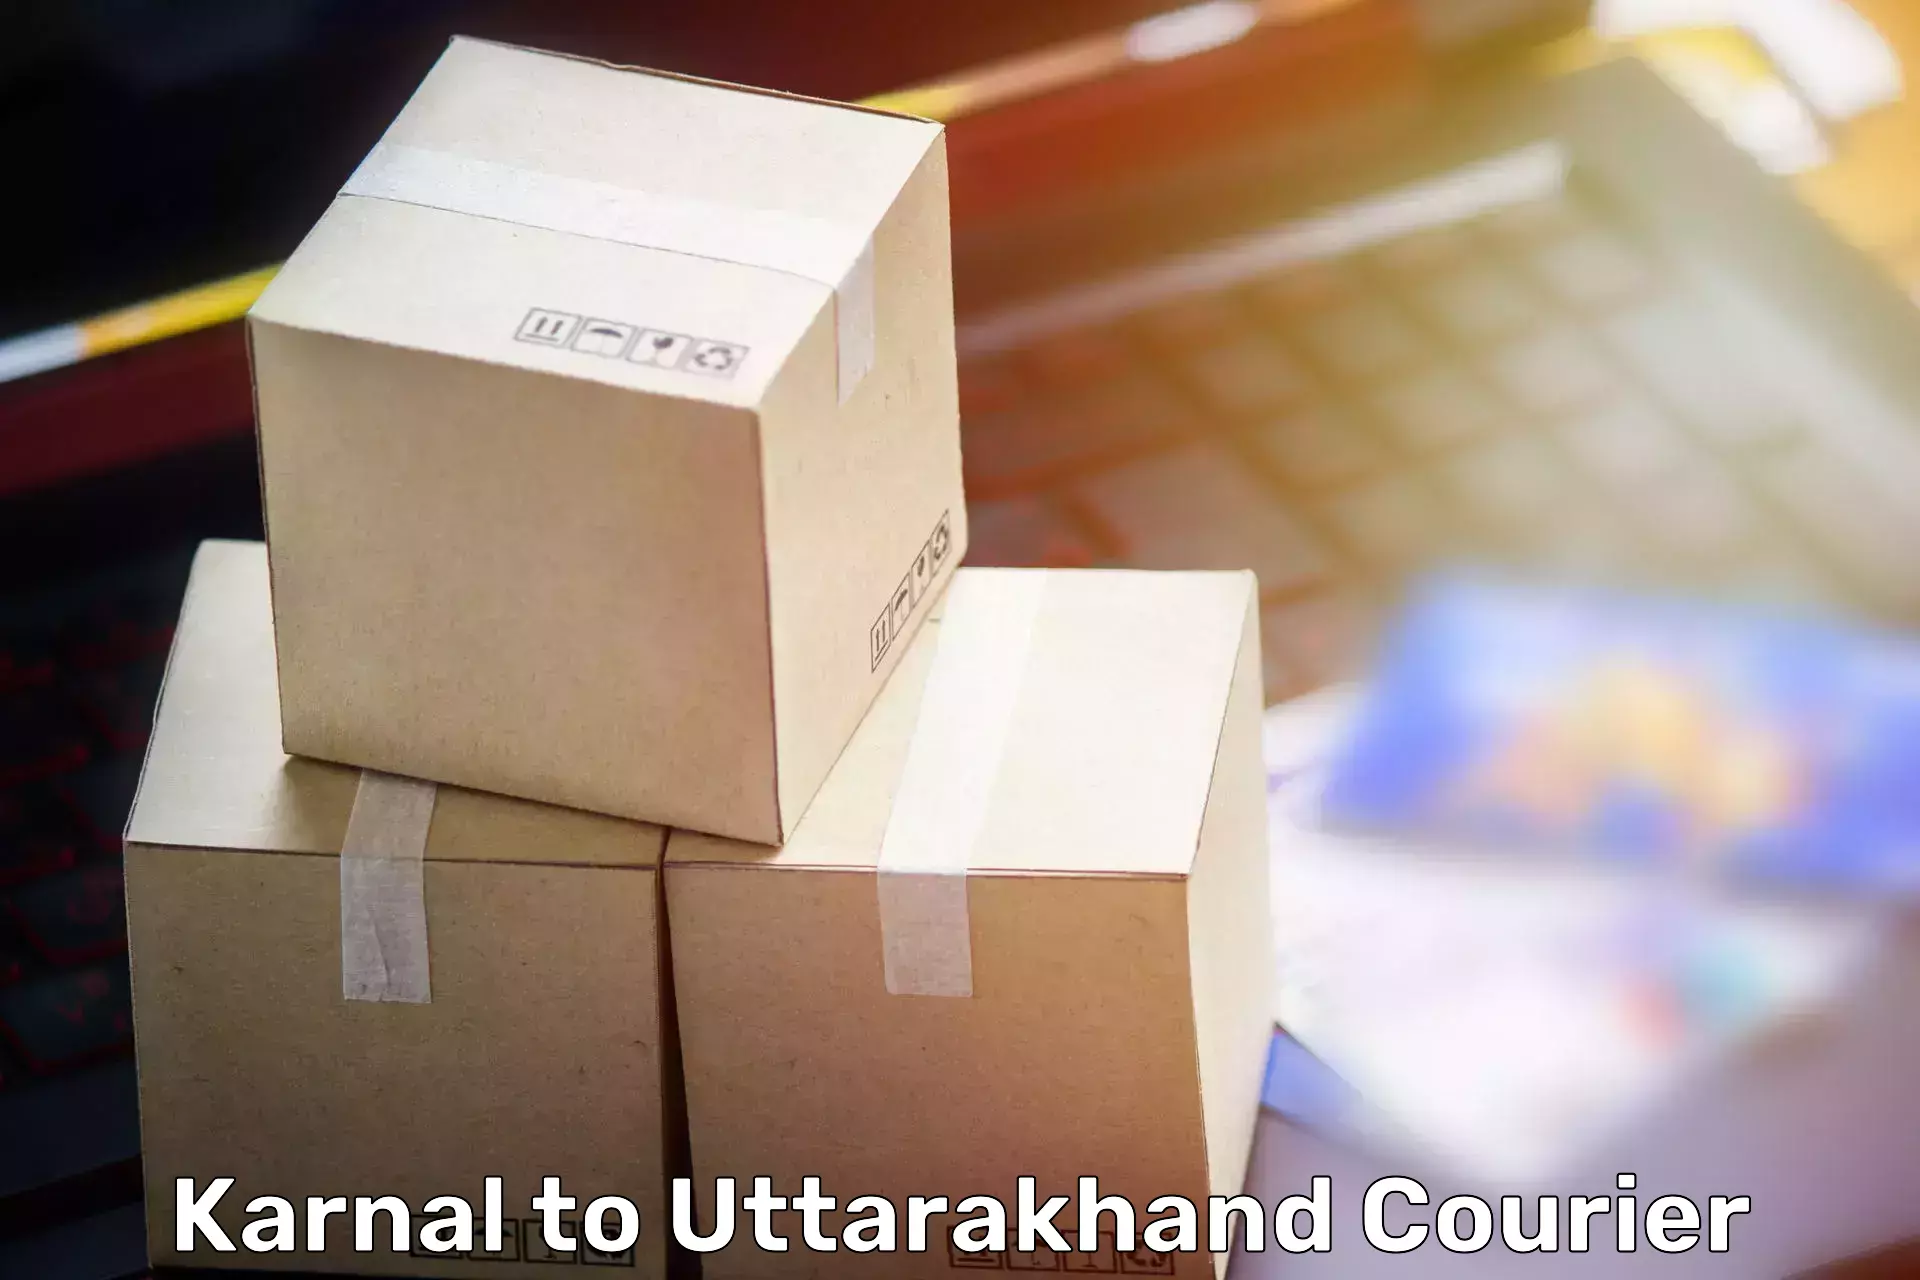 Furniture moving plans Karnal to Uttarakhand